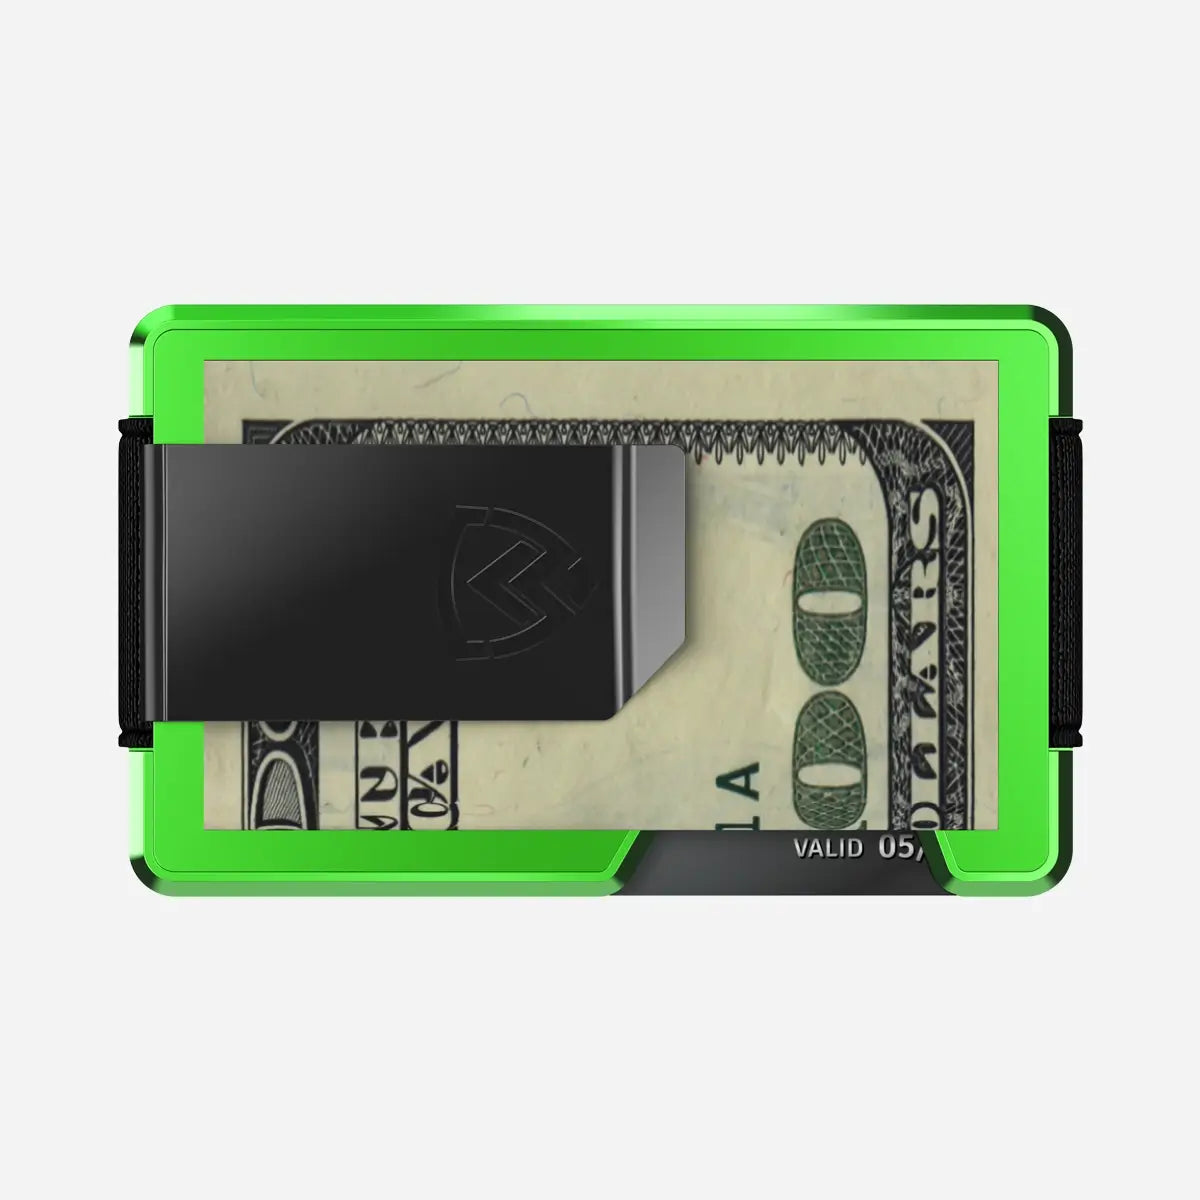 Axwell Wallet - Alien Green